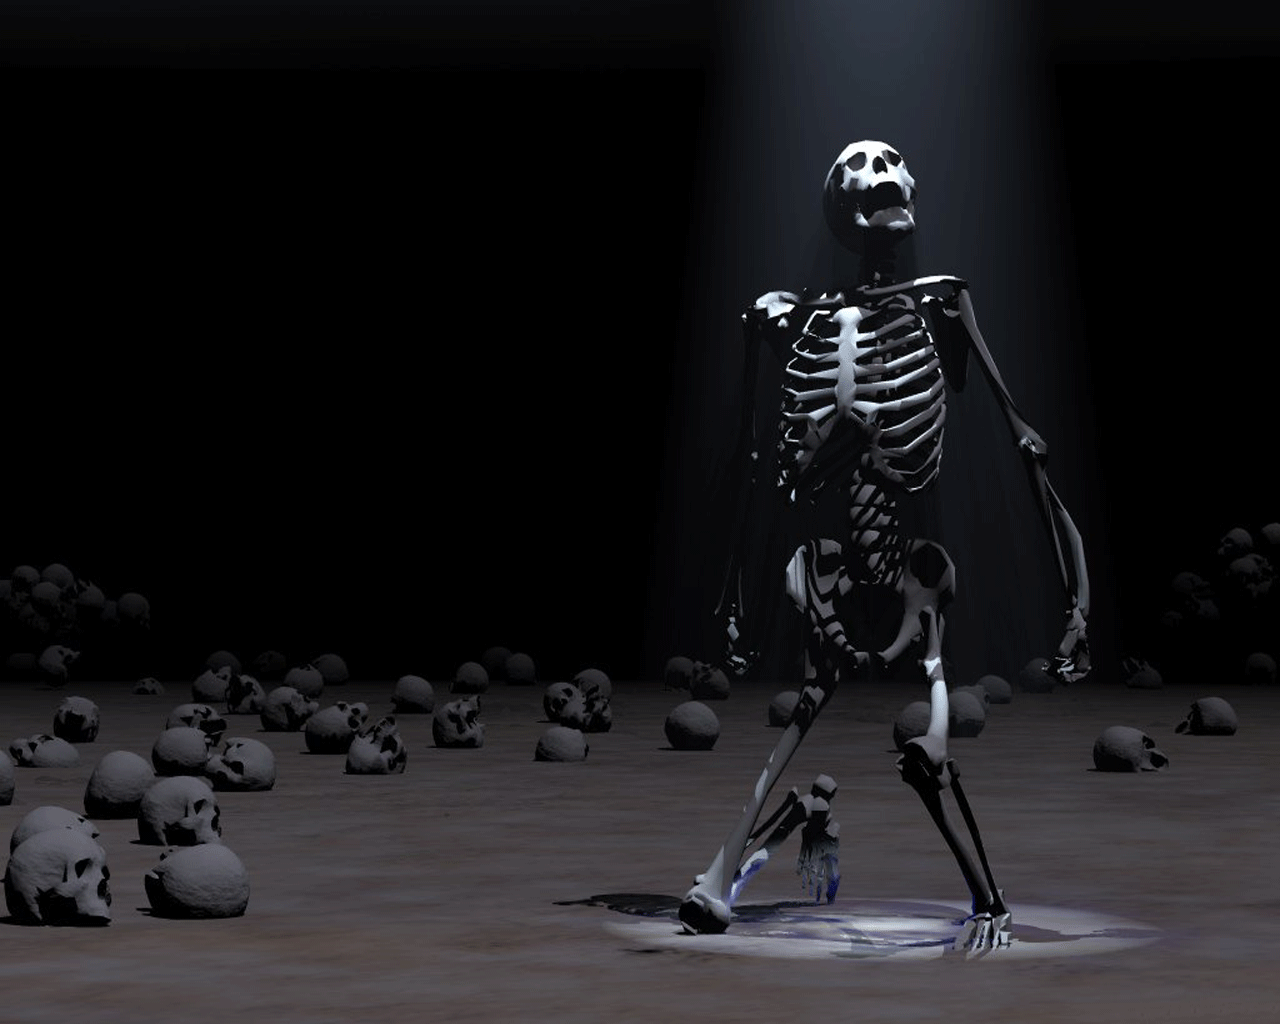 46+] 3D Skeleton Wallpaper - WallpaperSafari